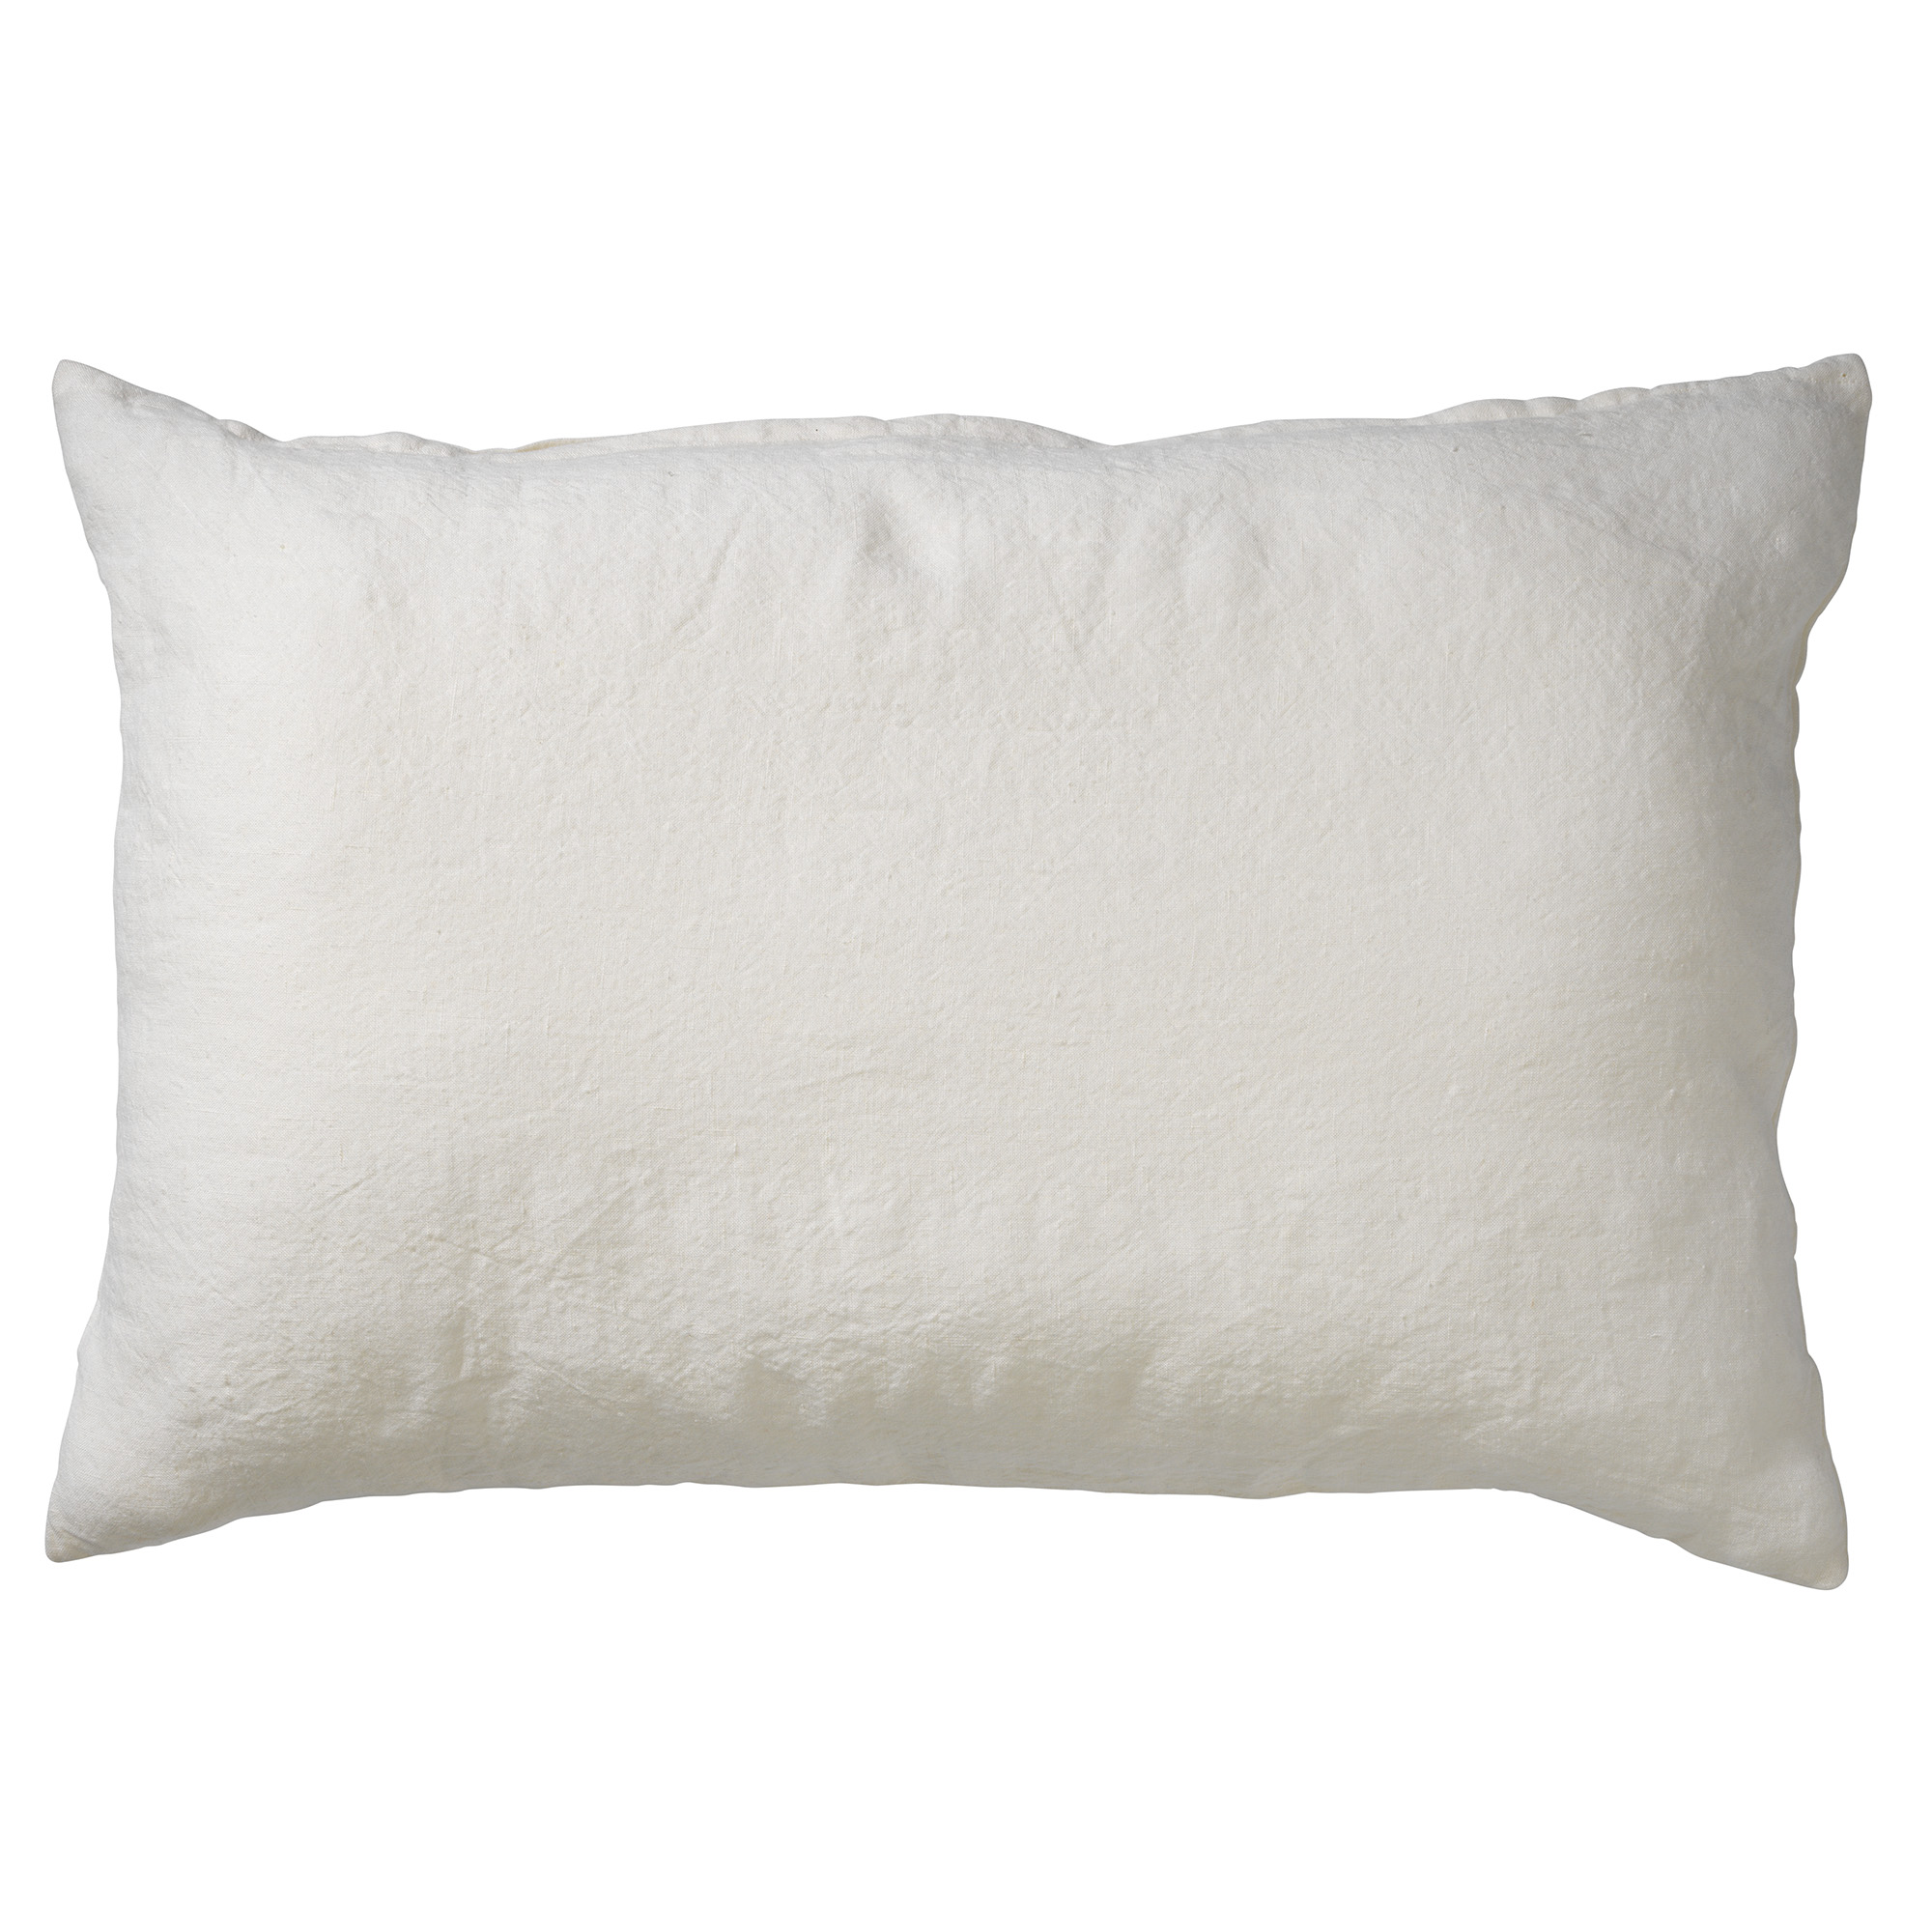 LINN - Cushion 40x60 cm Snow White - off-white